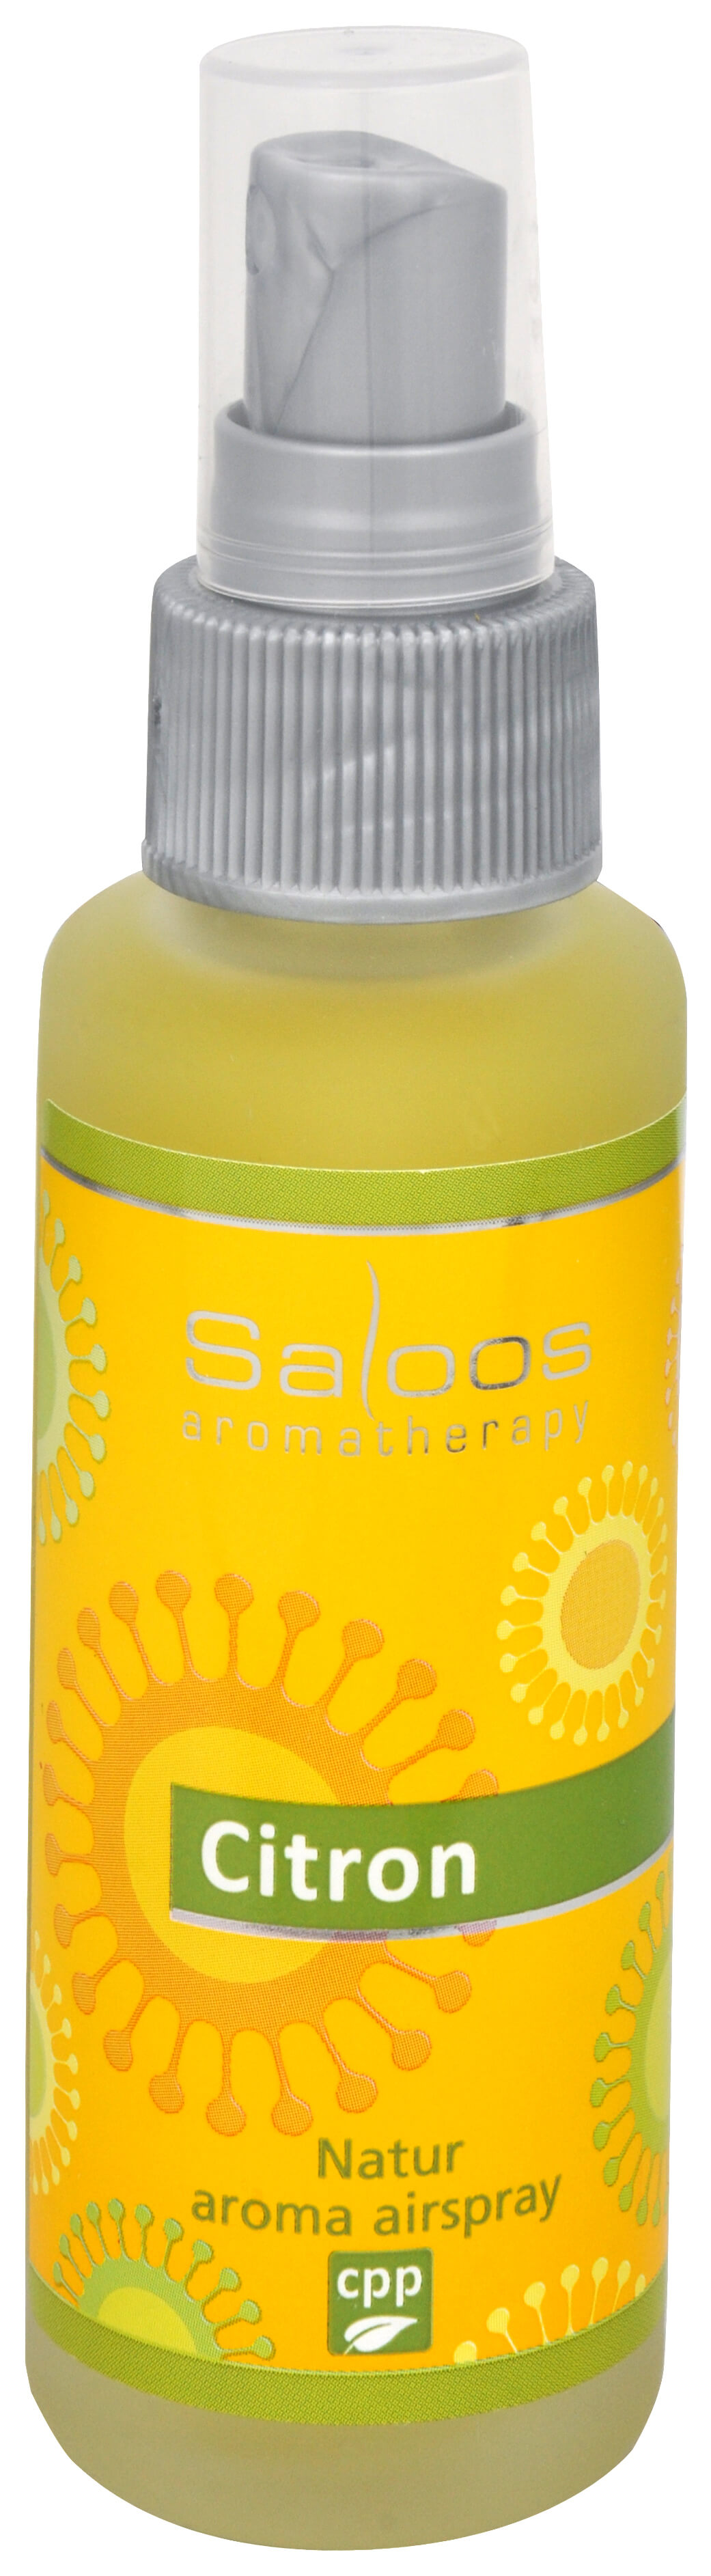 Zobrazit detail výrobku Saloos Natur aroma airspray - Citron (přírodní osvěžovač vzduchu) 50 ml + 2 měsíce na vrácení zboží